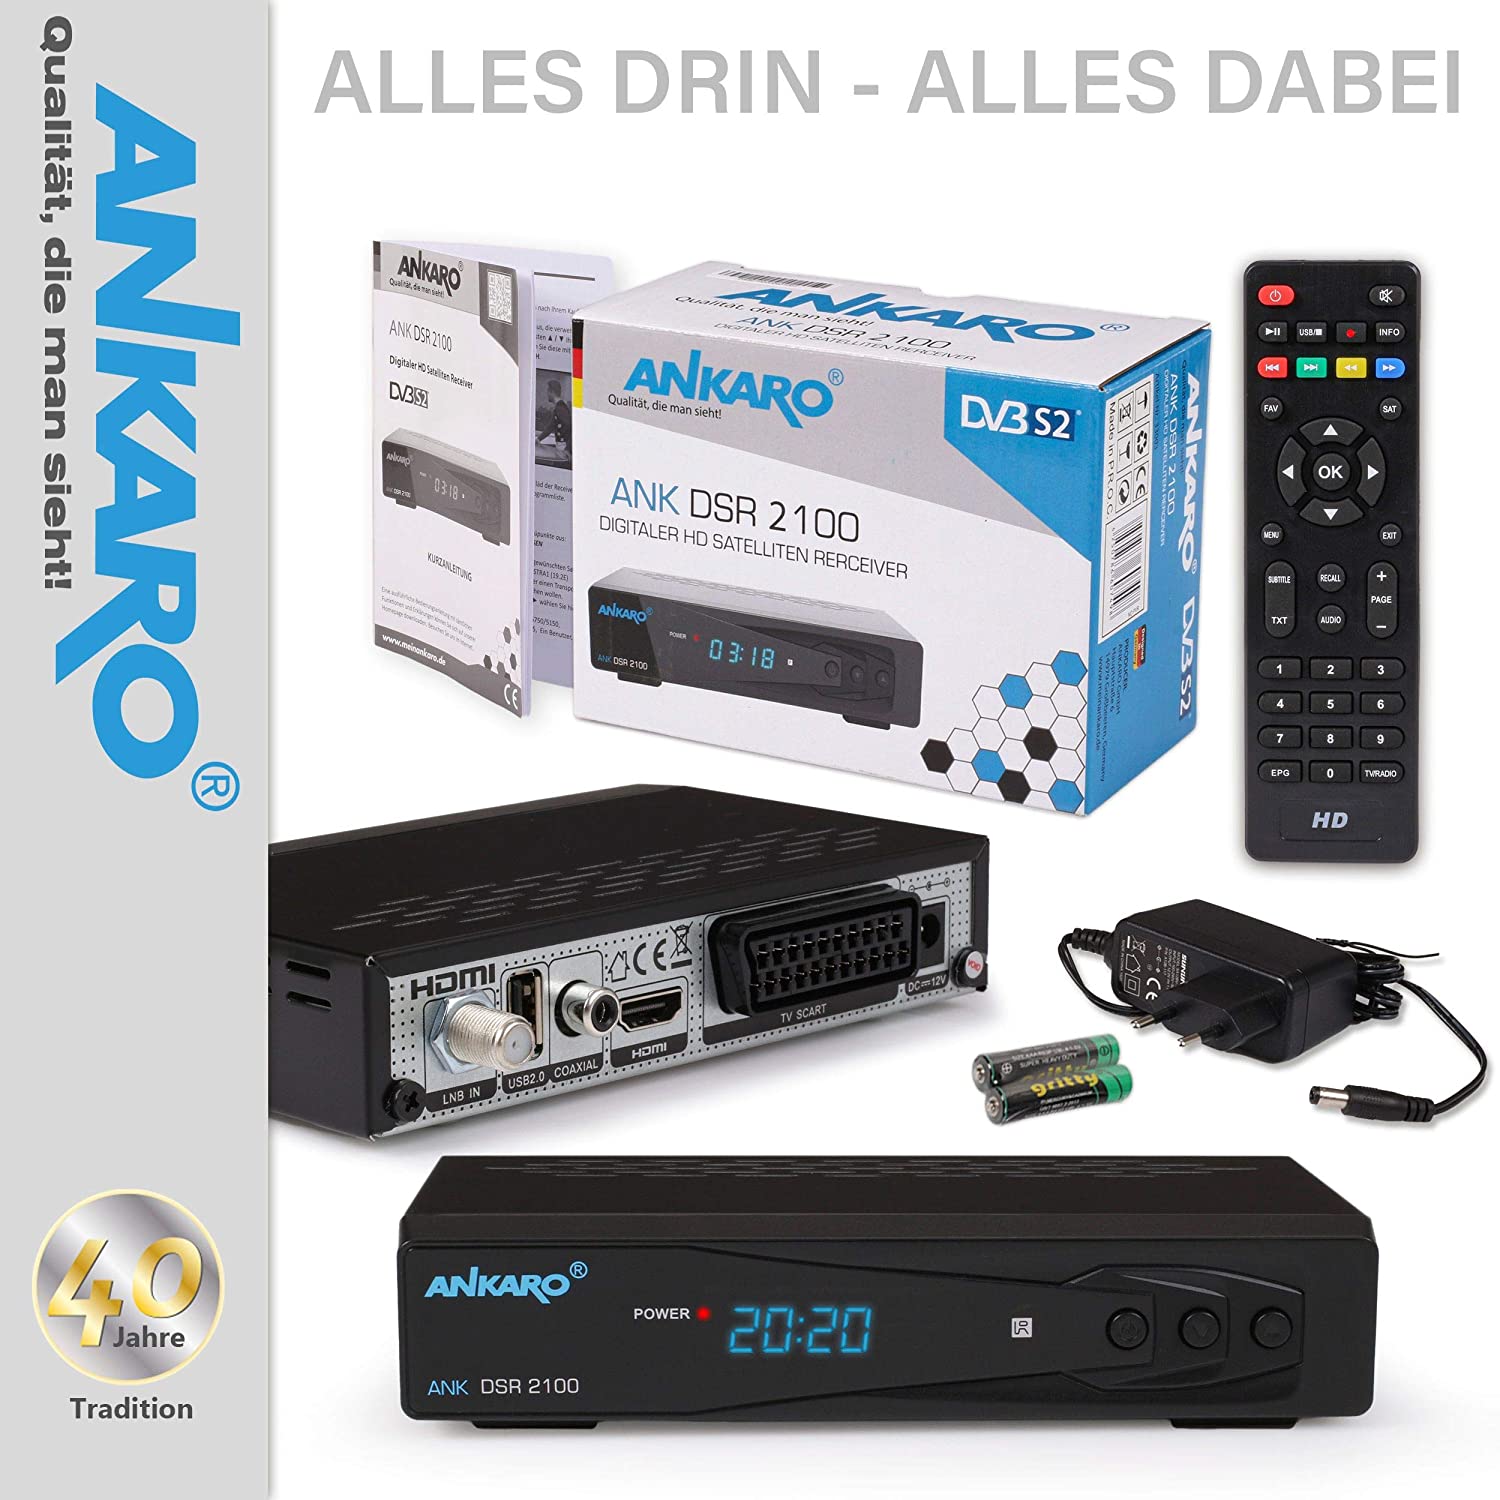 Ankaro DSR 2100 Plus HD HDTV digitaler Satelliten-Receiver (HDTV, DVB-S/S2, SAT, HDMI, SCART, 1x USB 2.0, Easyfind, Full HD 1080p) [vorprogrammiert für Astra Hotbird]  – schwarz